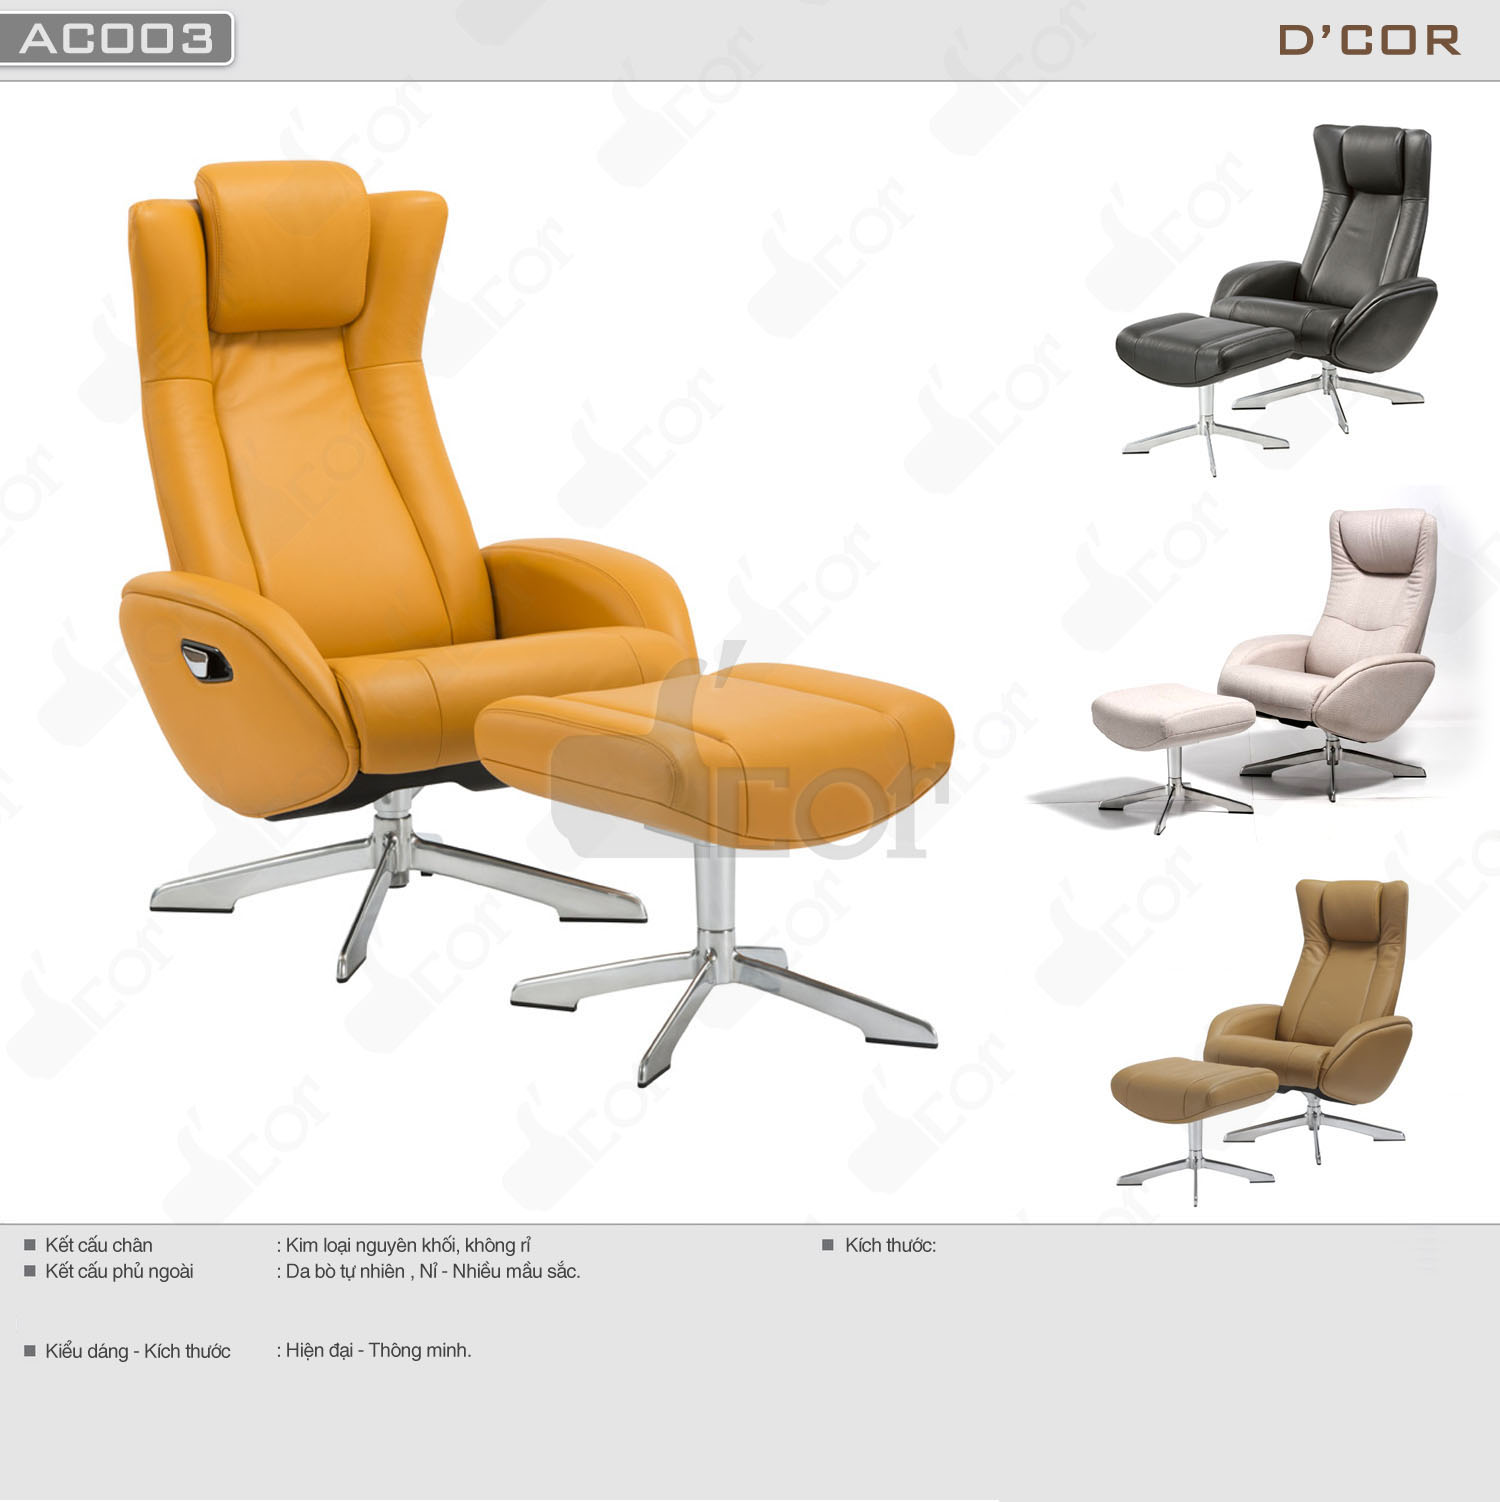 Ghế armchair thông minh giá rẻ cho nội thất nhà đẹp hiện đại: AC003 > Ghế armchair thông minh cho nội thất nhà đẹp hiện đại: AC003